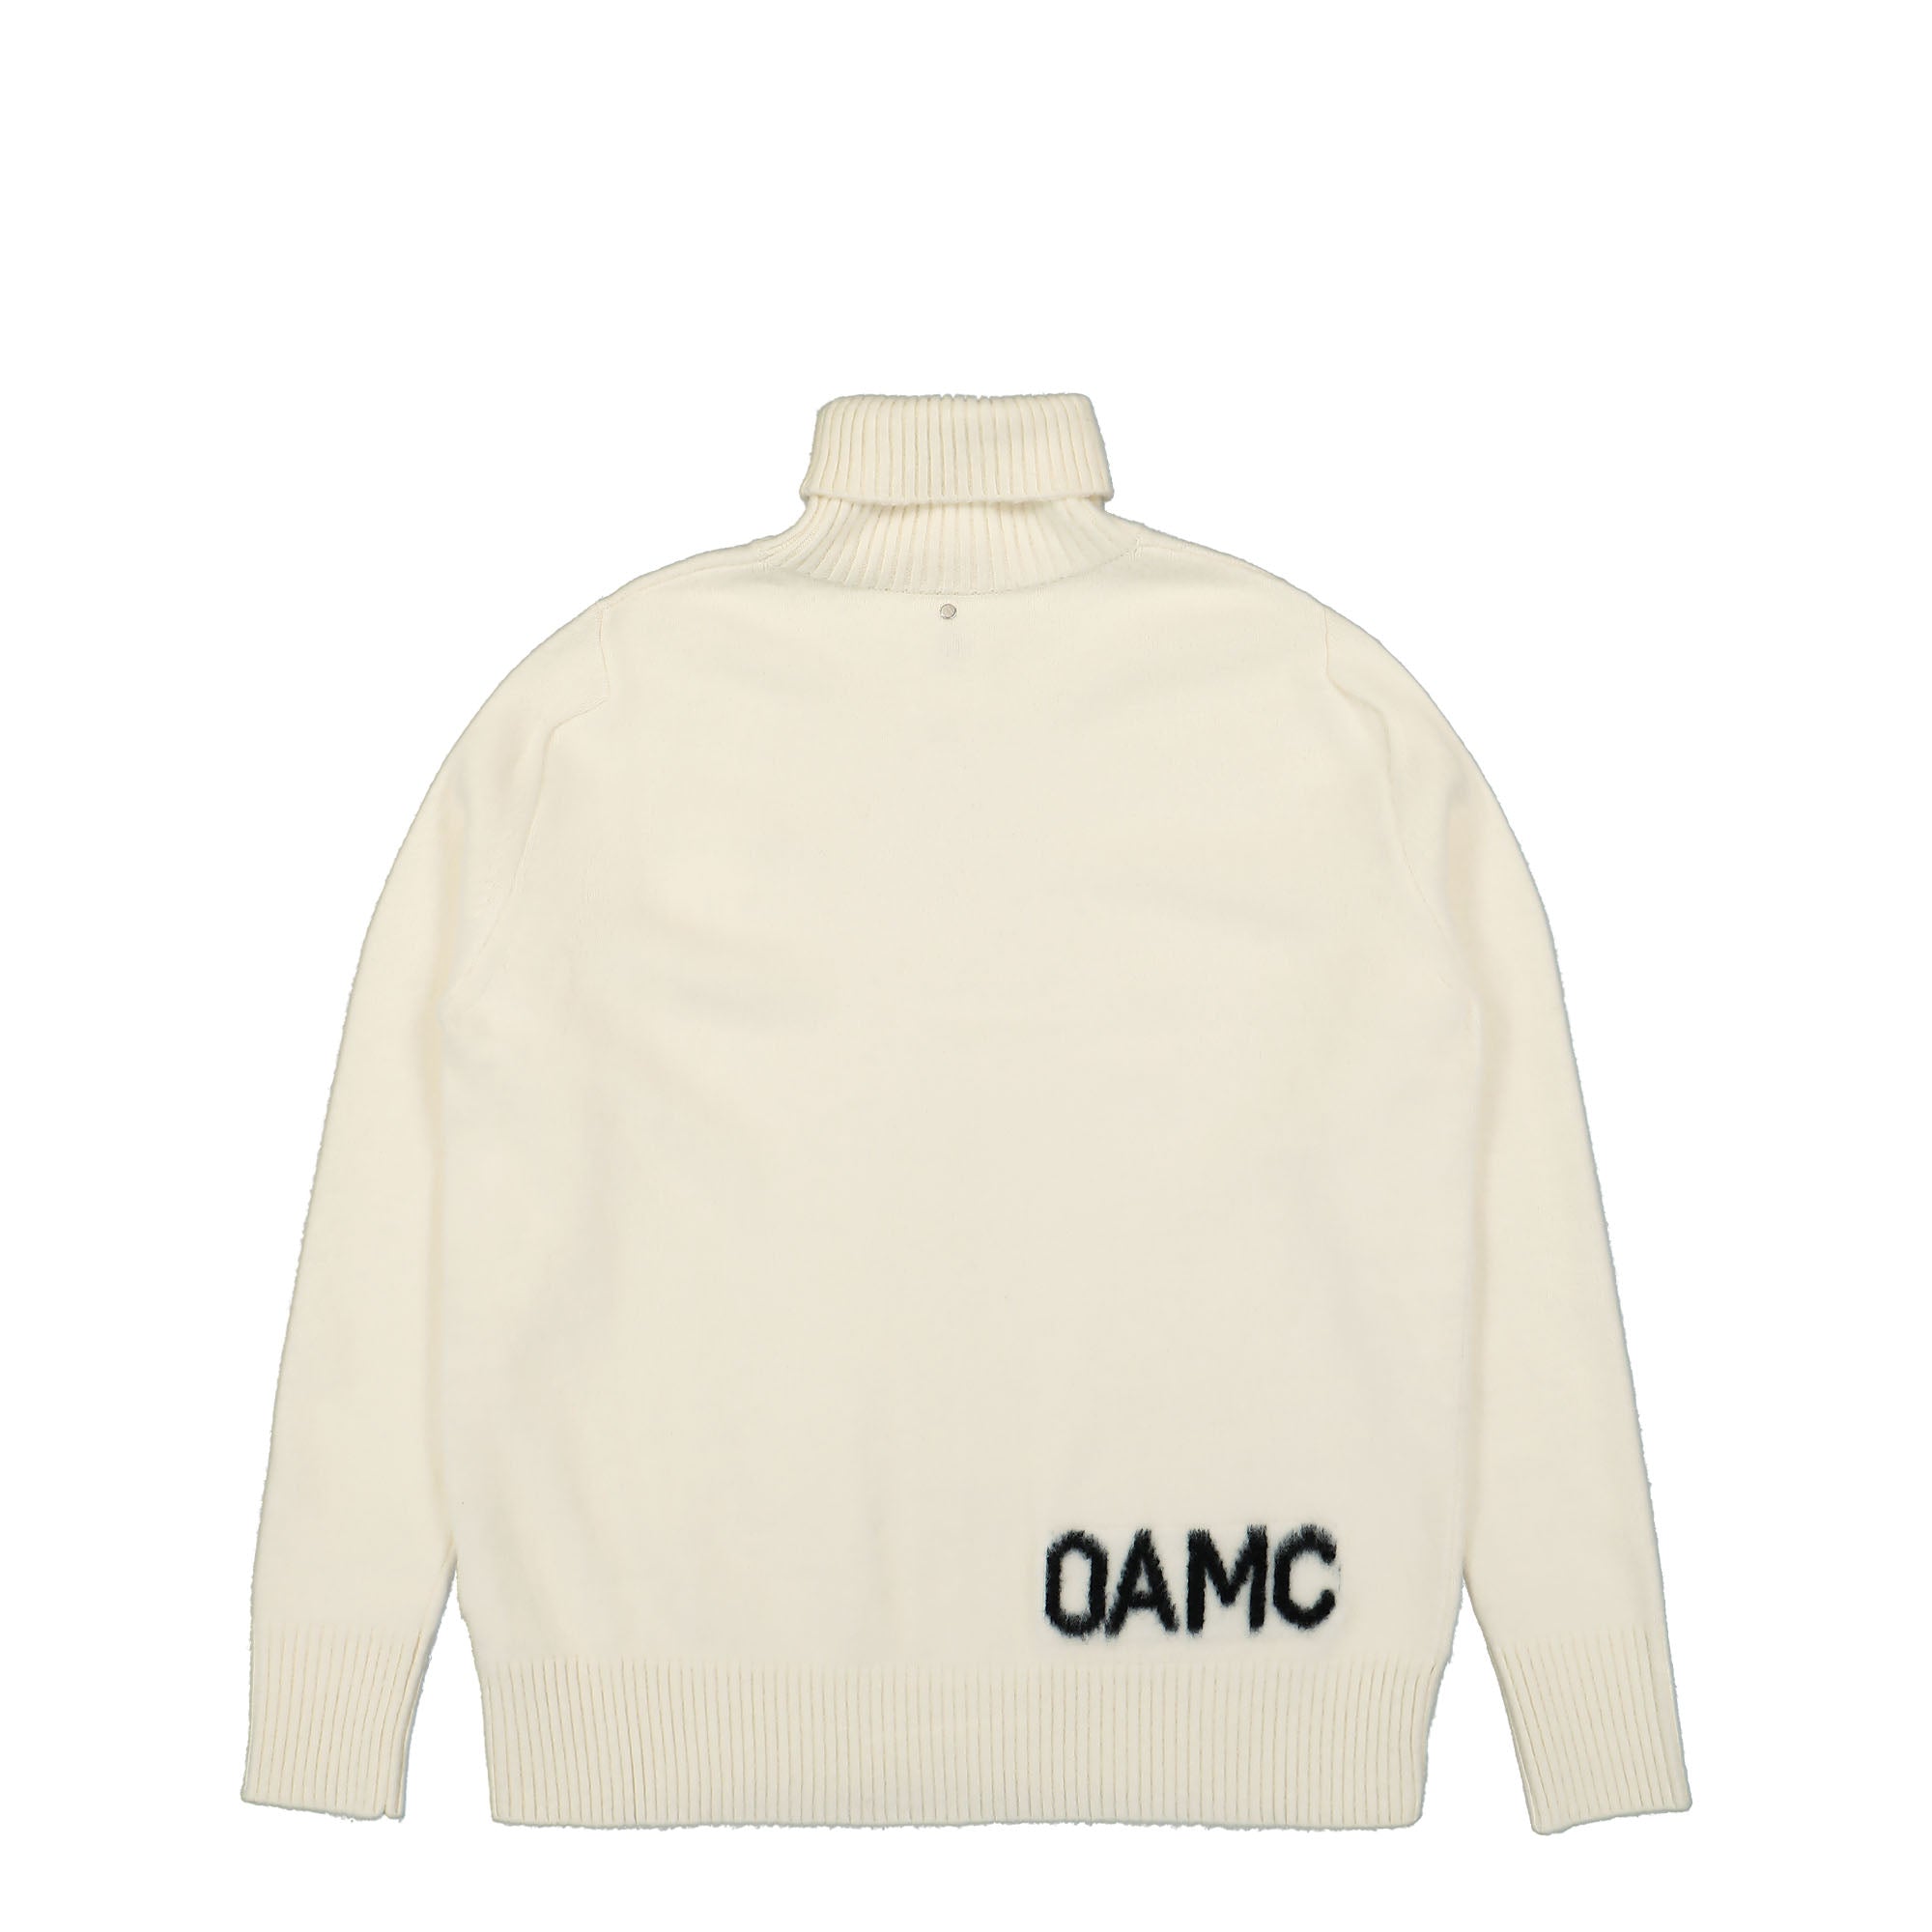 OAMC Whistler Turtleneck Sweater - ニット/セーター